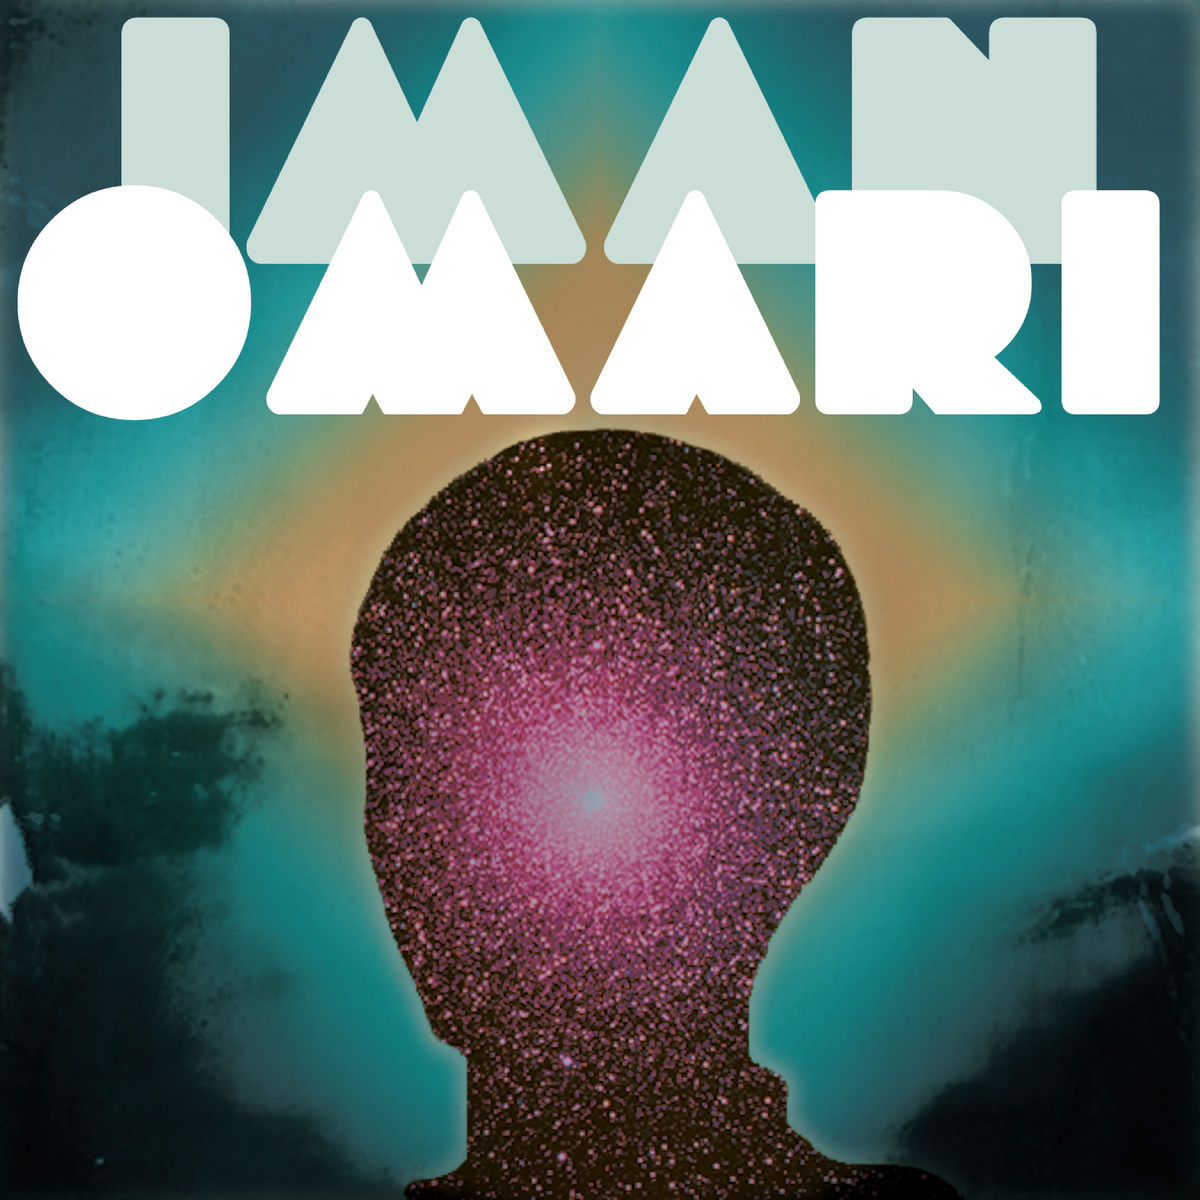 Iman Omari - "Energy" (Release)